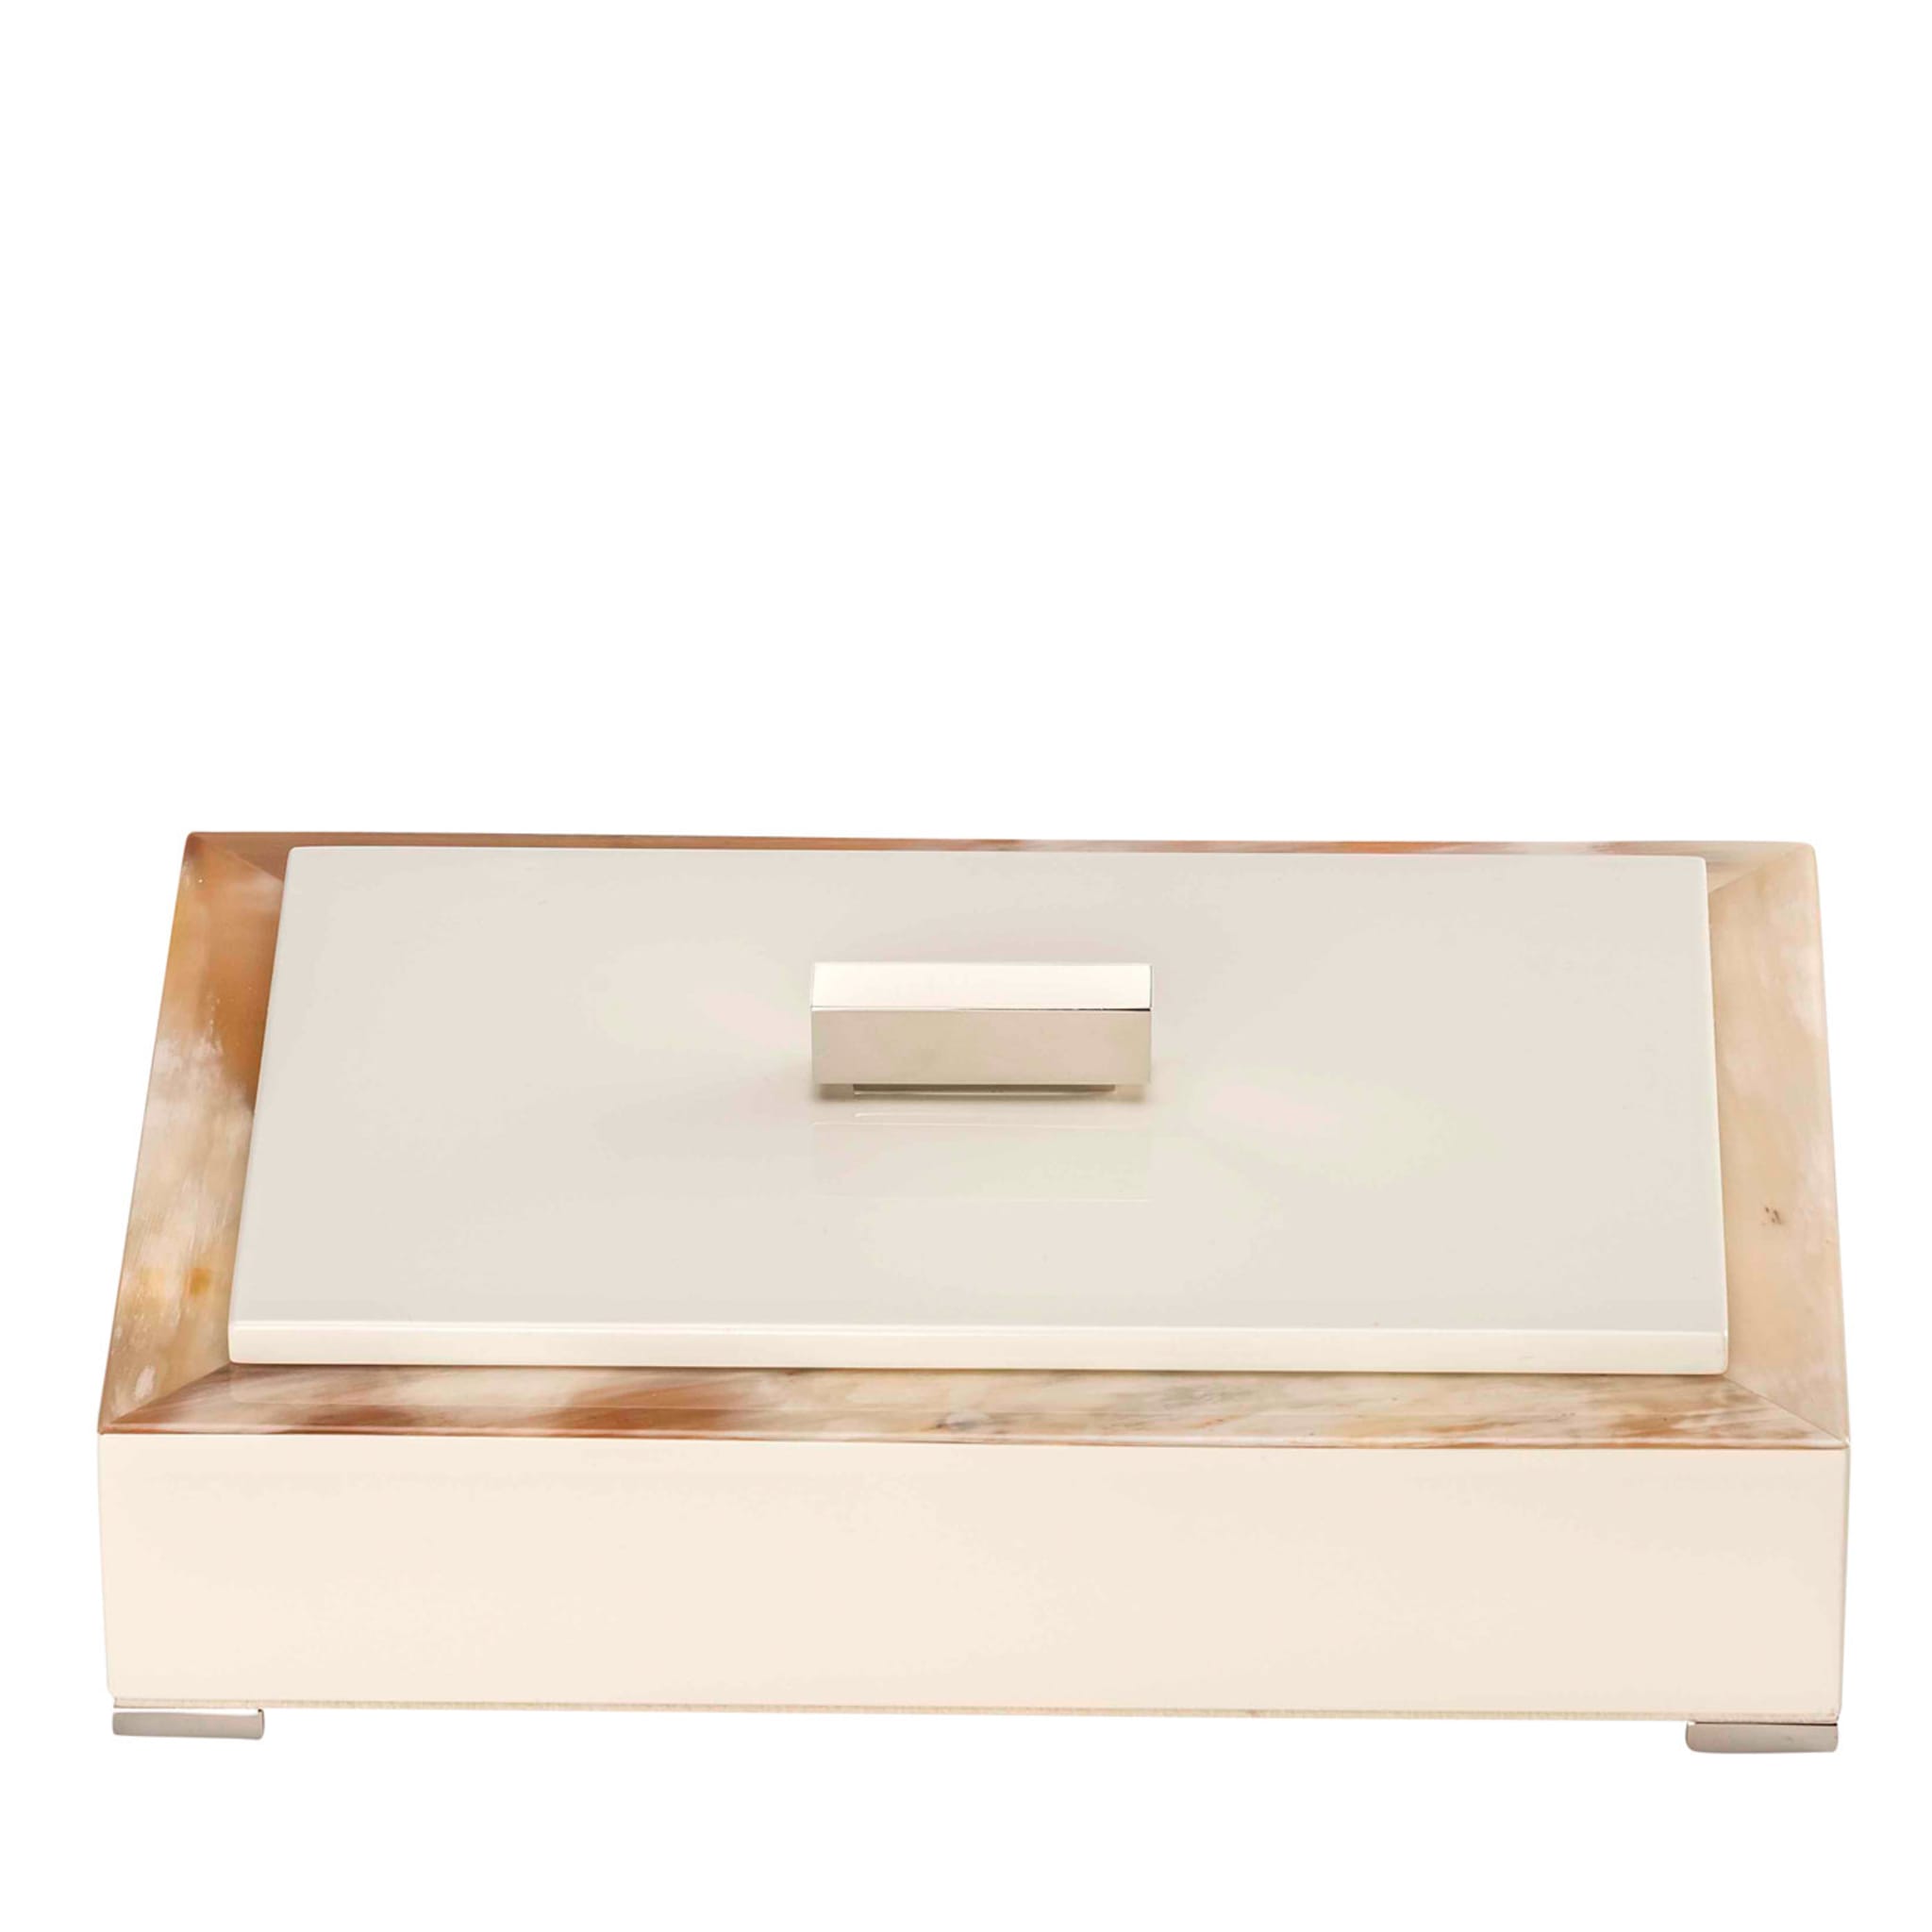 Ivory Small Storage Box - Main view